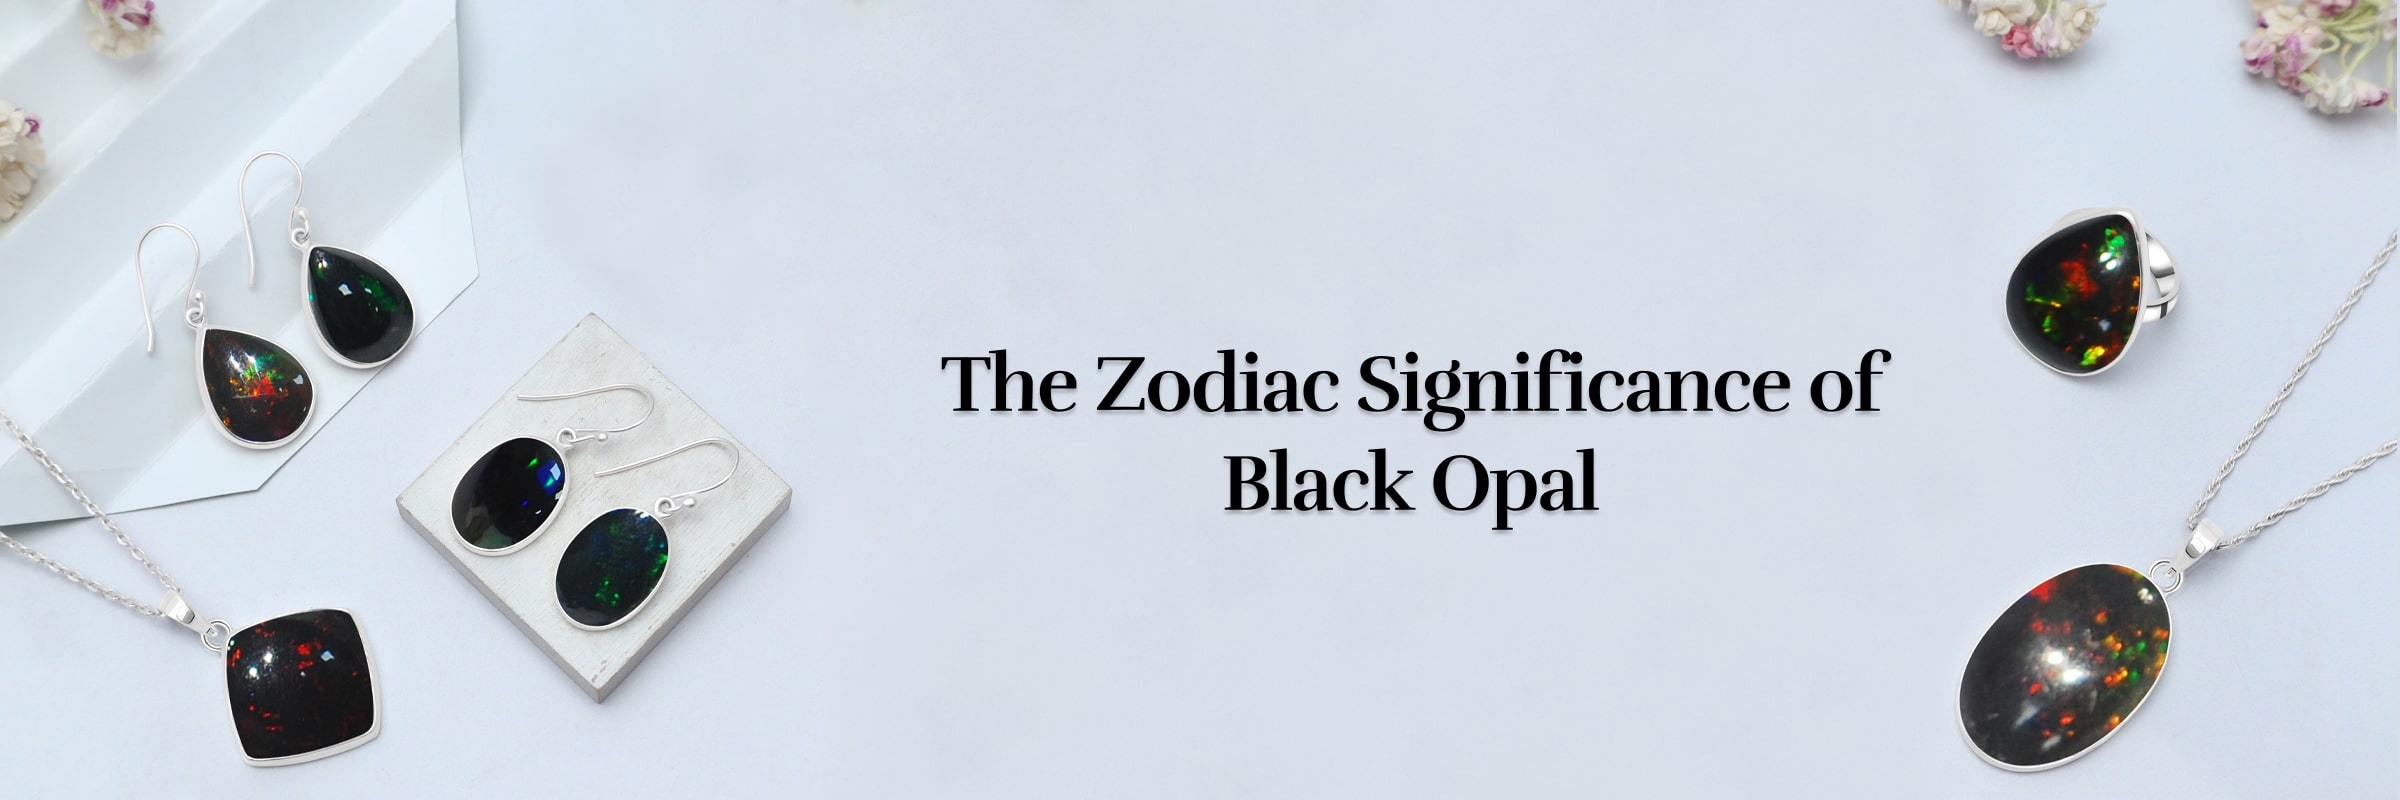 Black Opal & It’s Zodiac Association